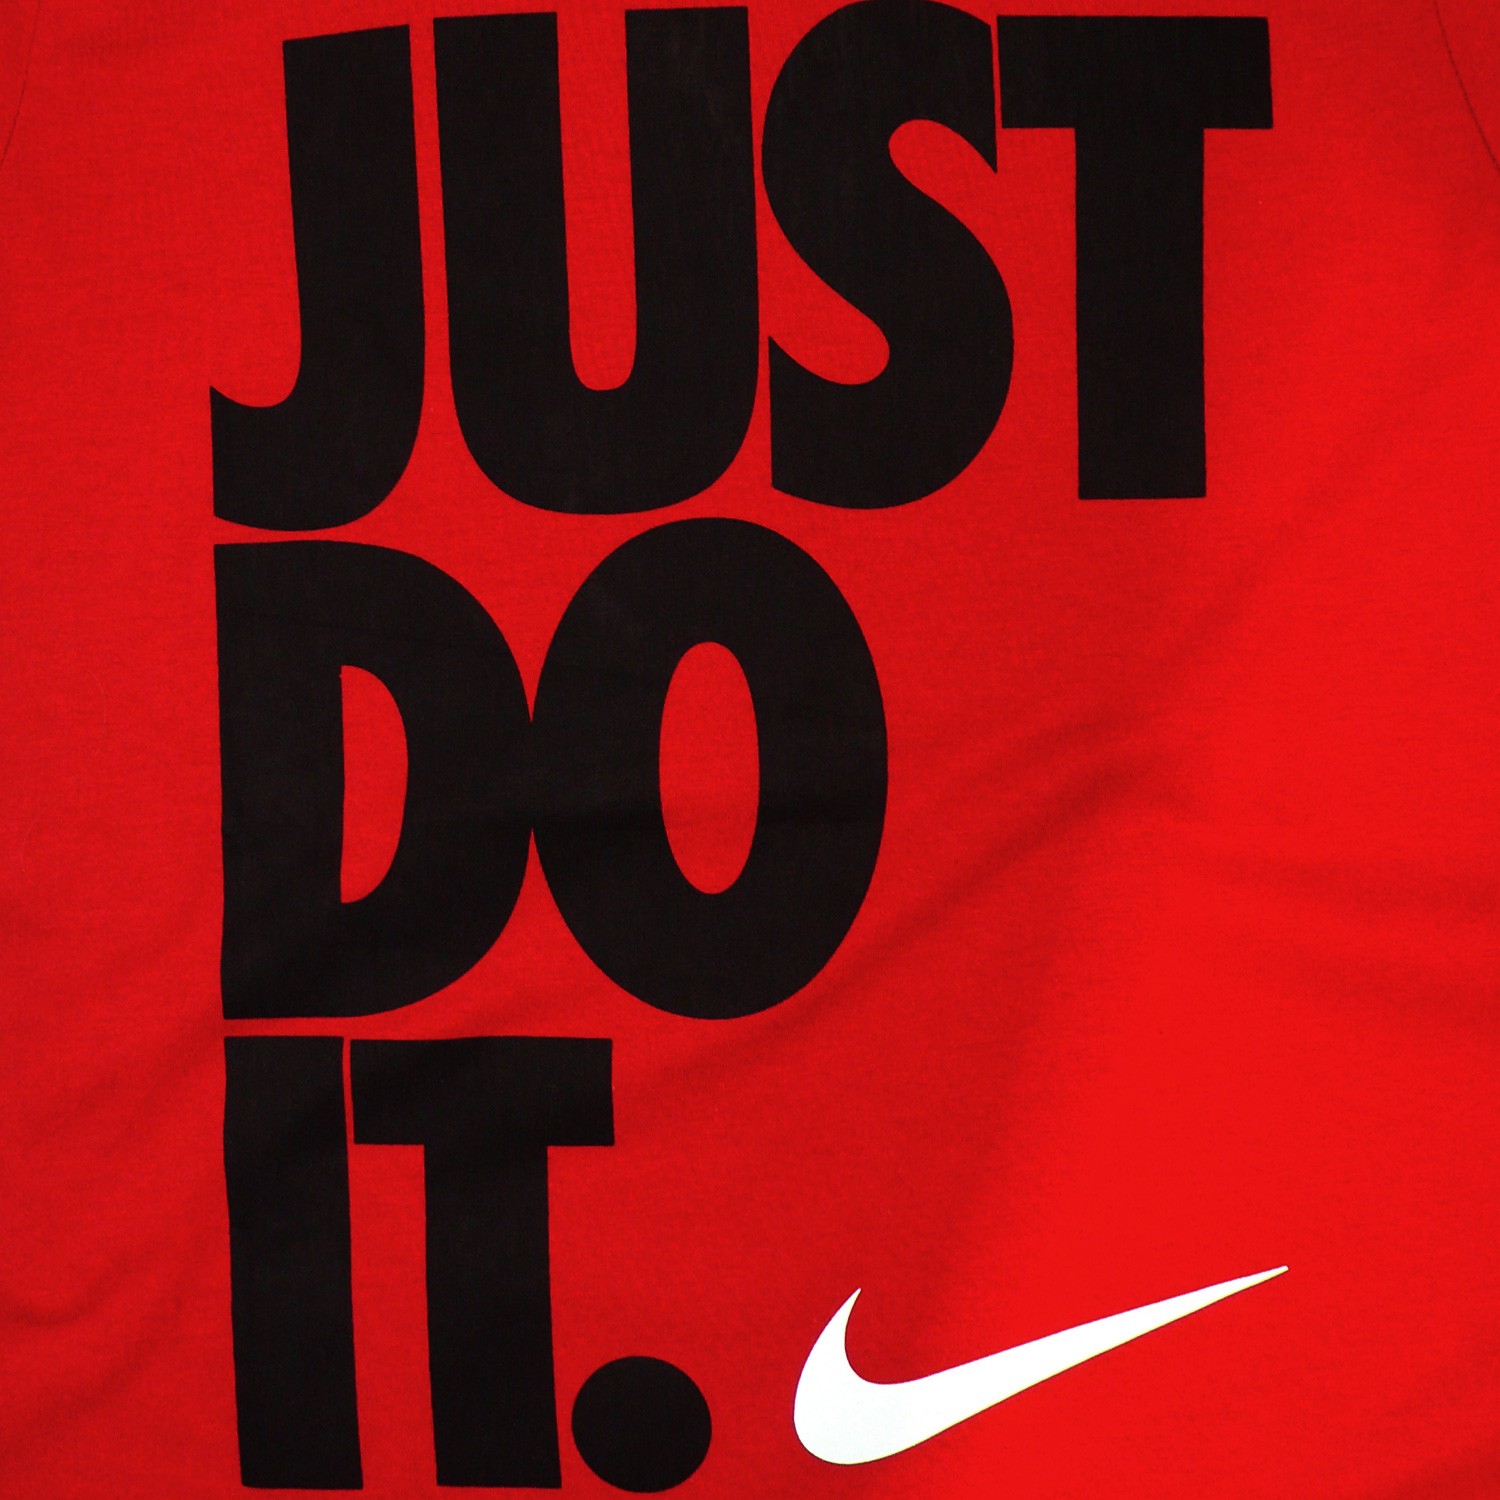 Найк just do it. Nike just do it лого. Лозунг найк. Just do it логотип. Слоган Nike just do it.